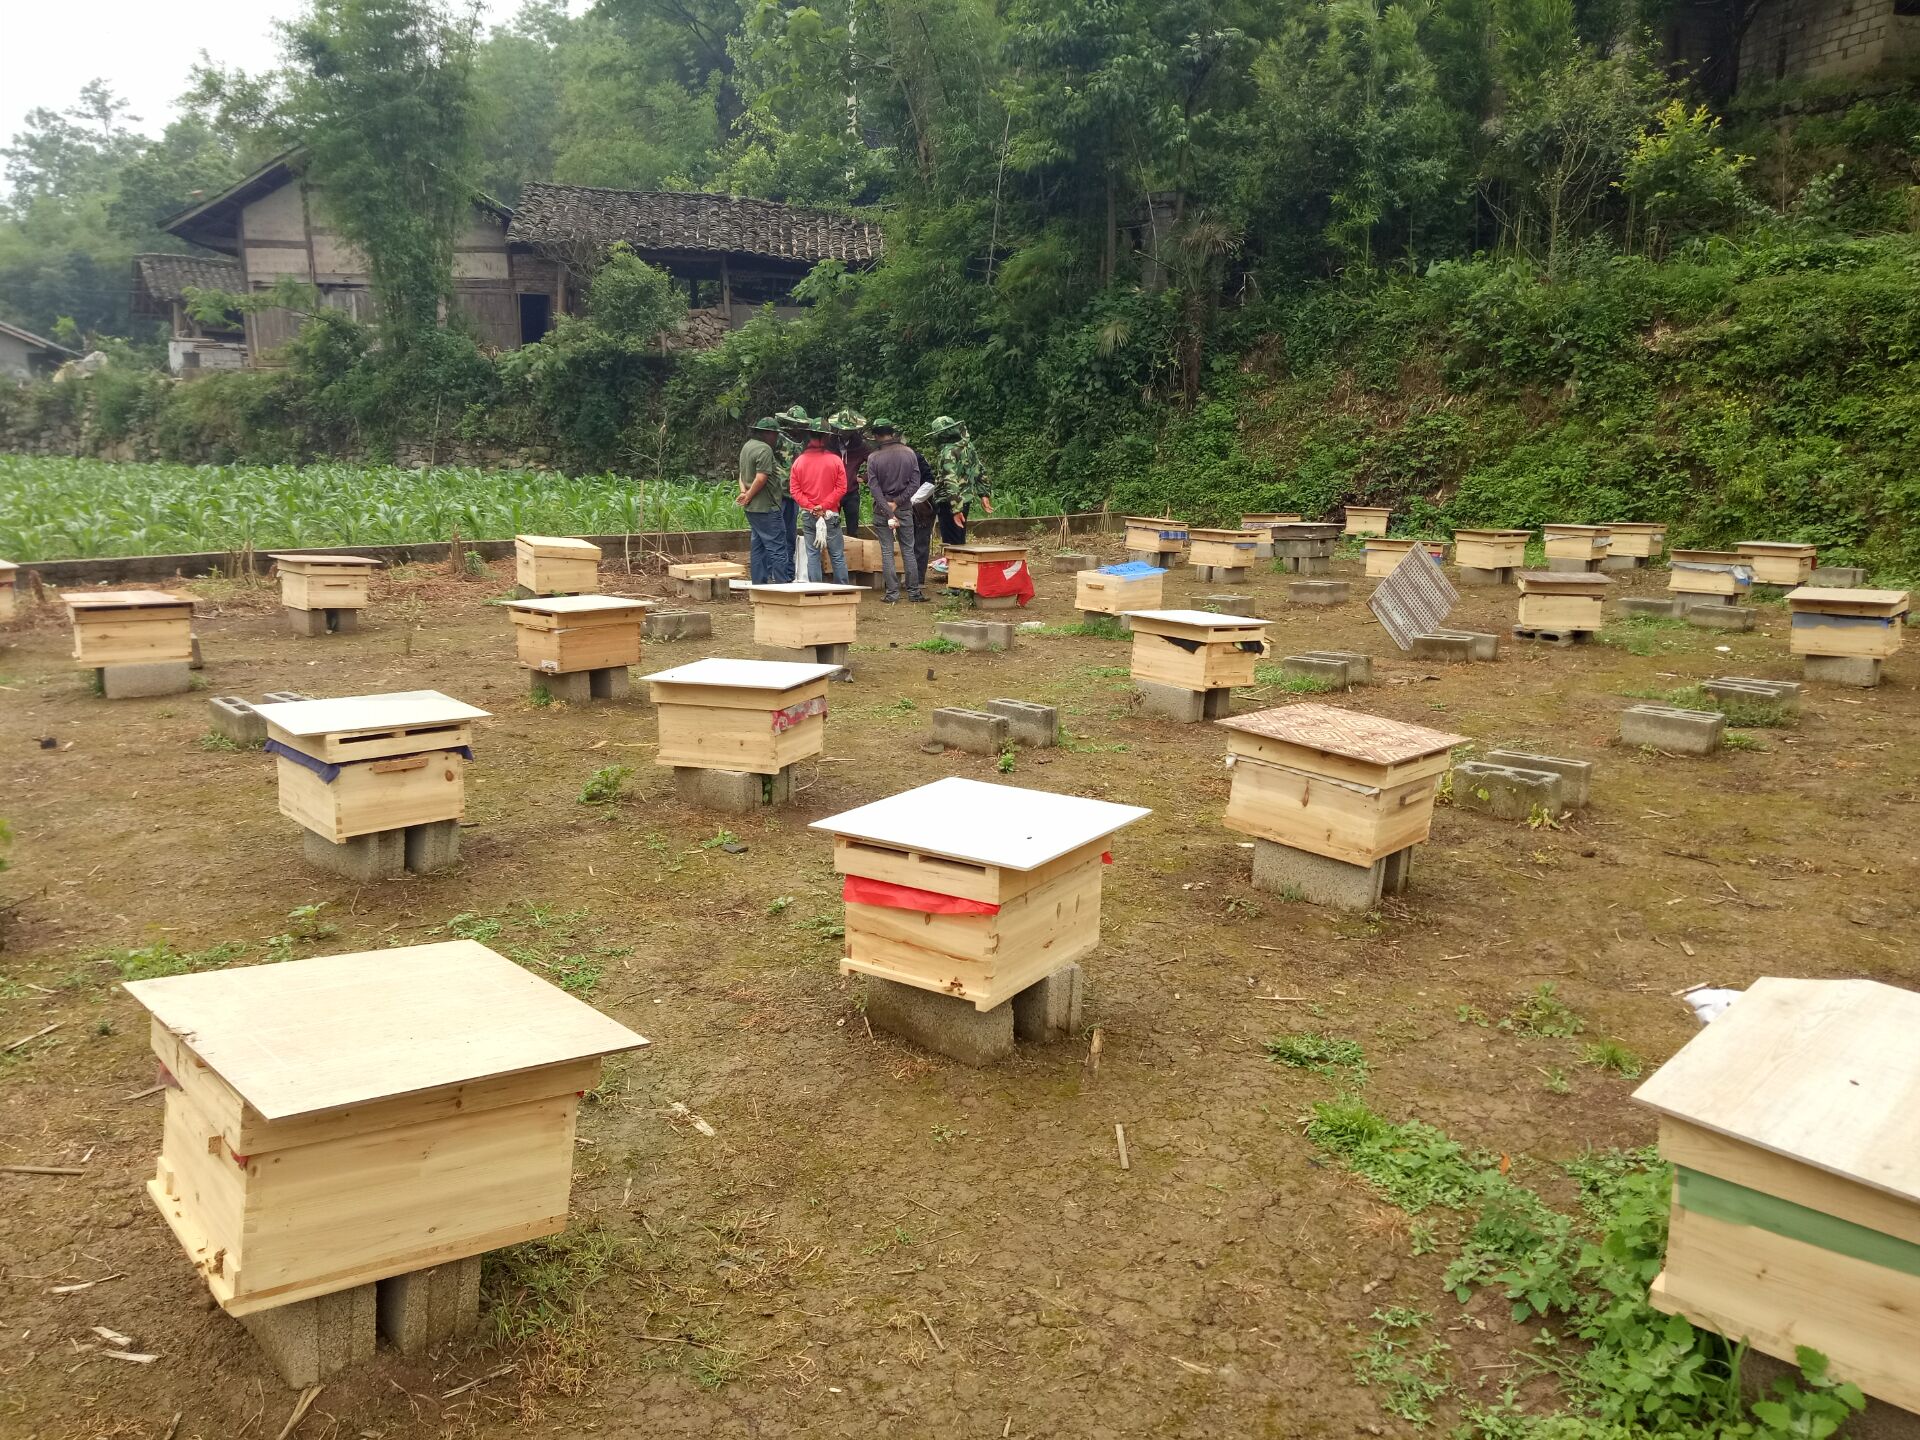 贵州犹氏蜜蜂养殖贵州中蜂出售贵州蜜蜂养殖基贵州中蜂养殖贵州土蜂出售